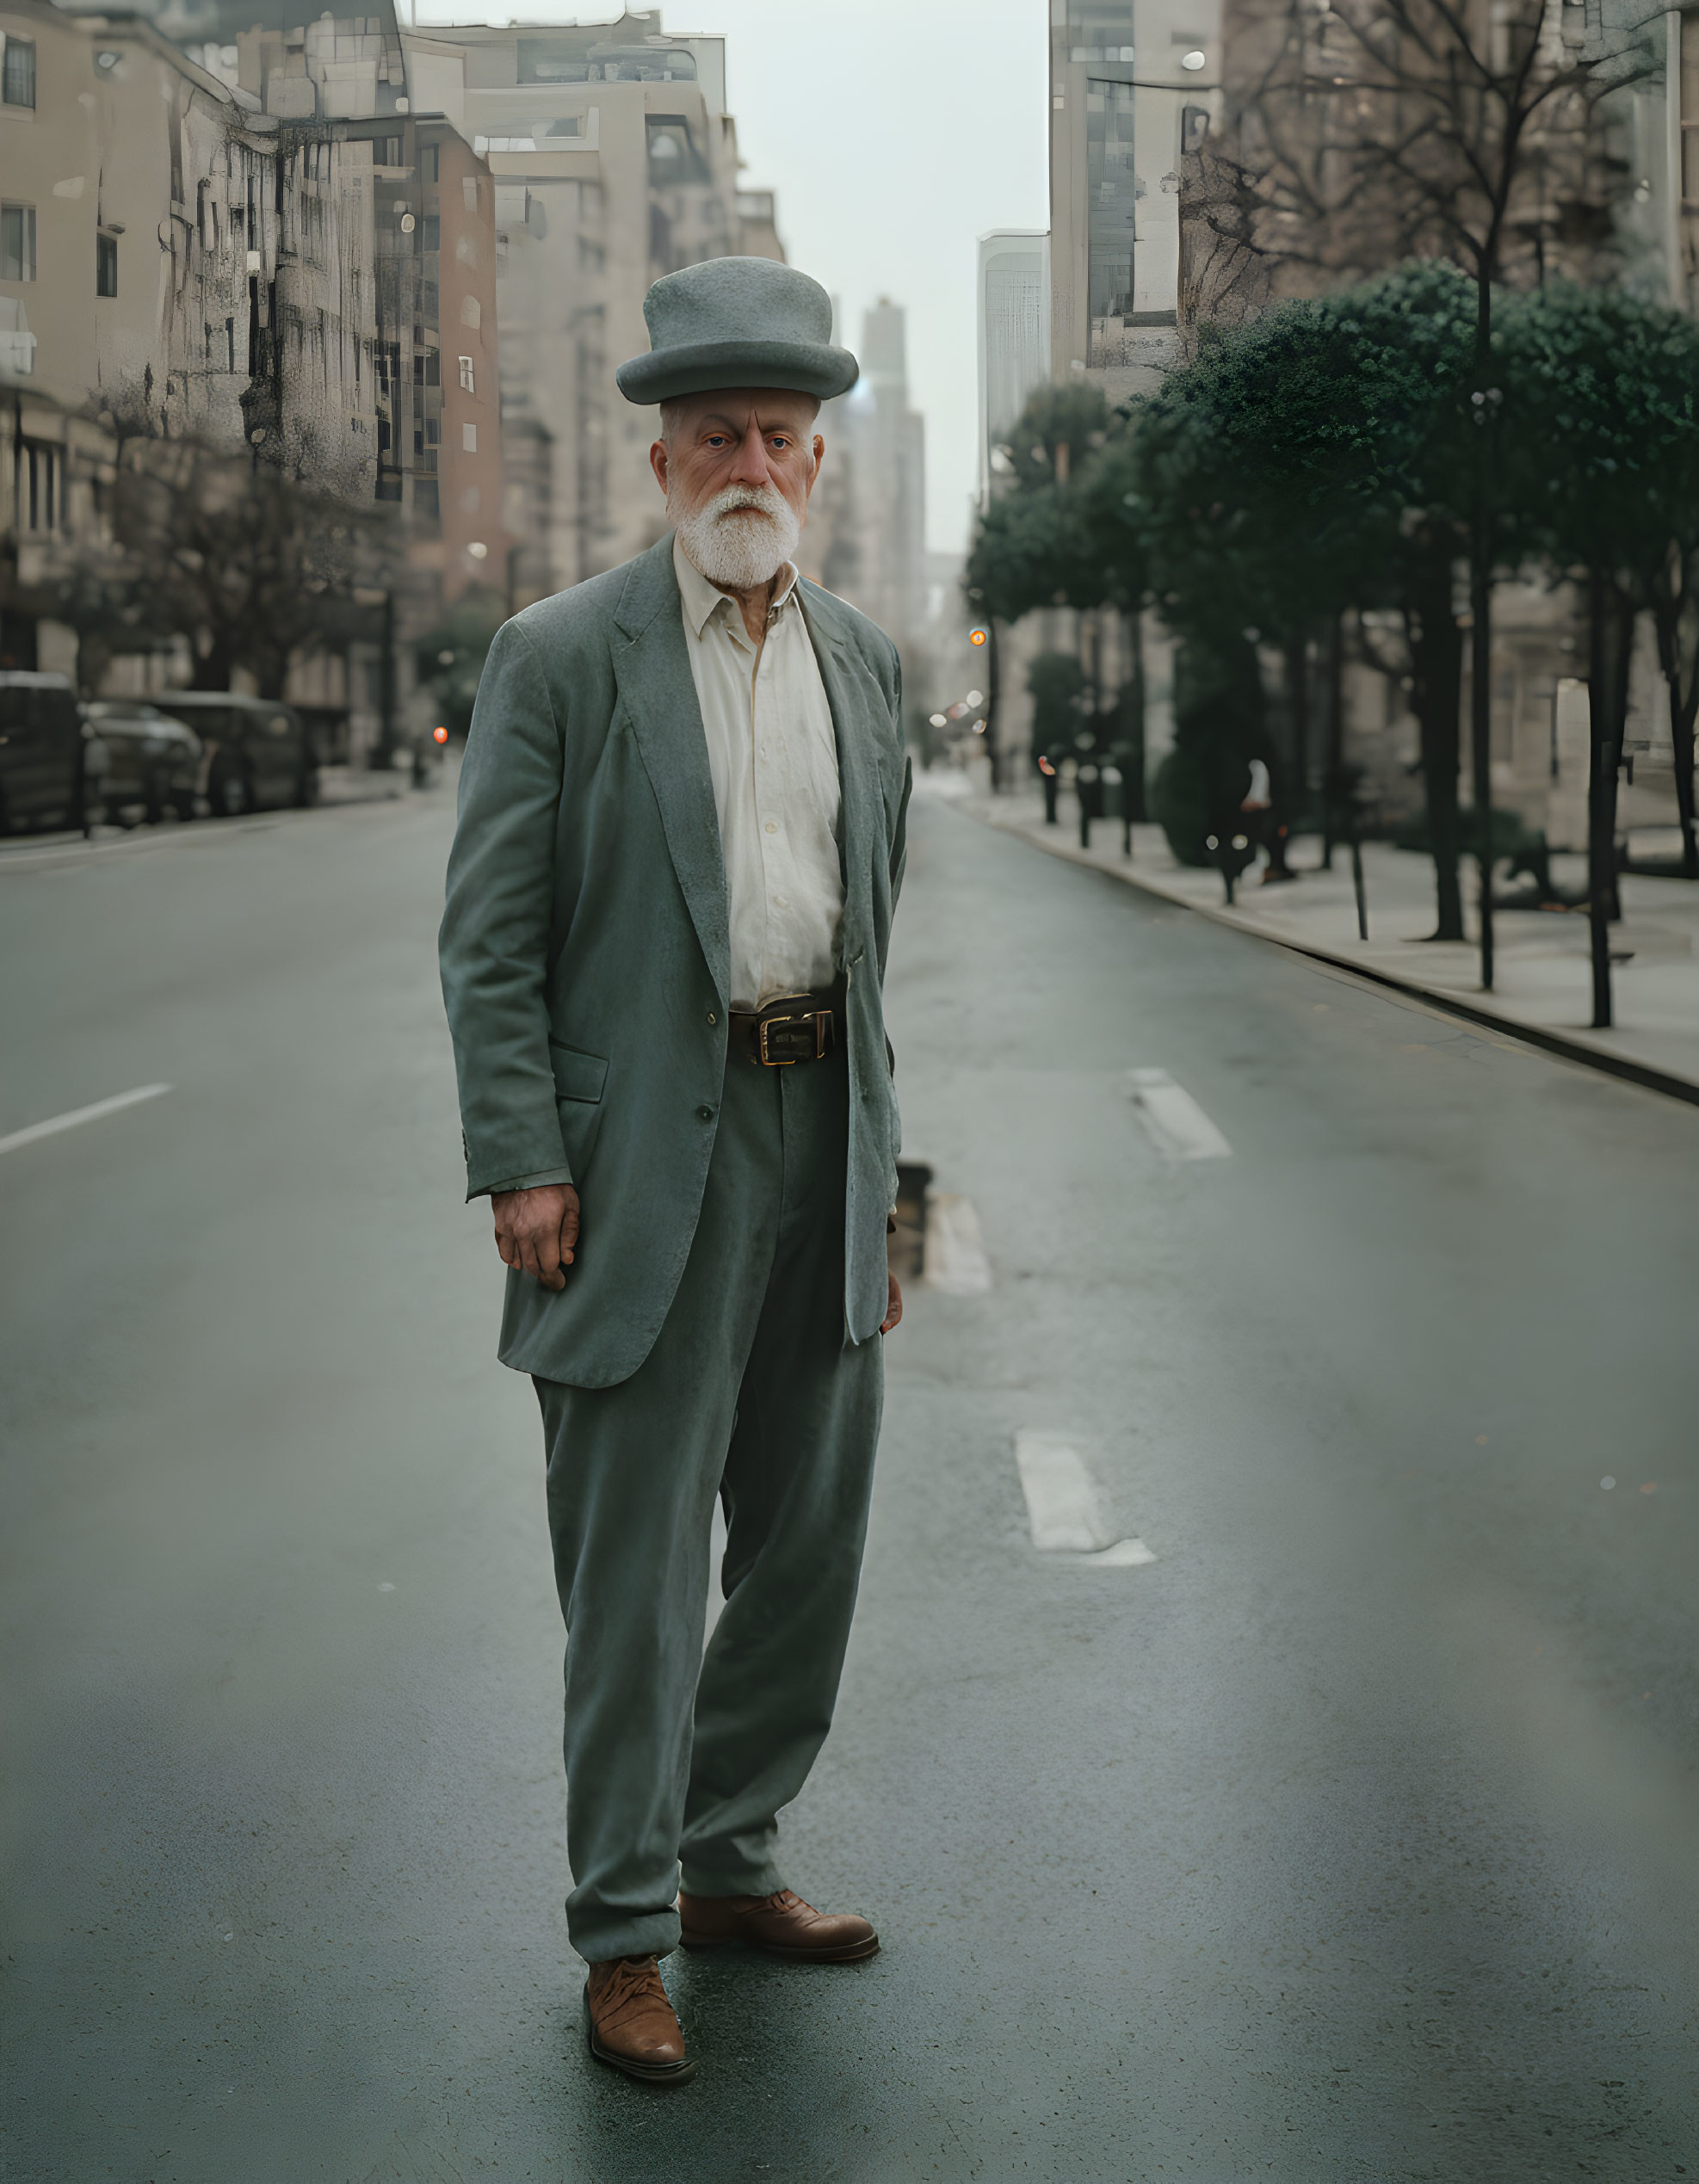 Elderly man in vintage attire on misty urban street